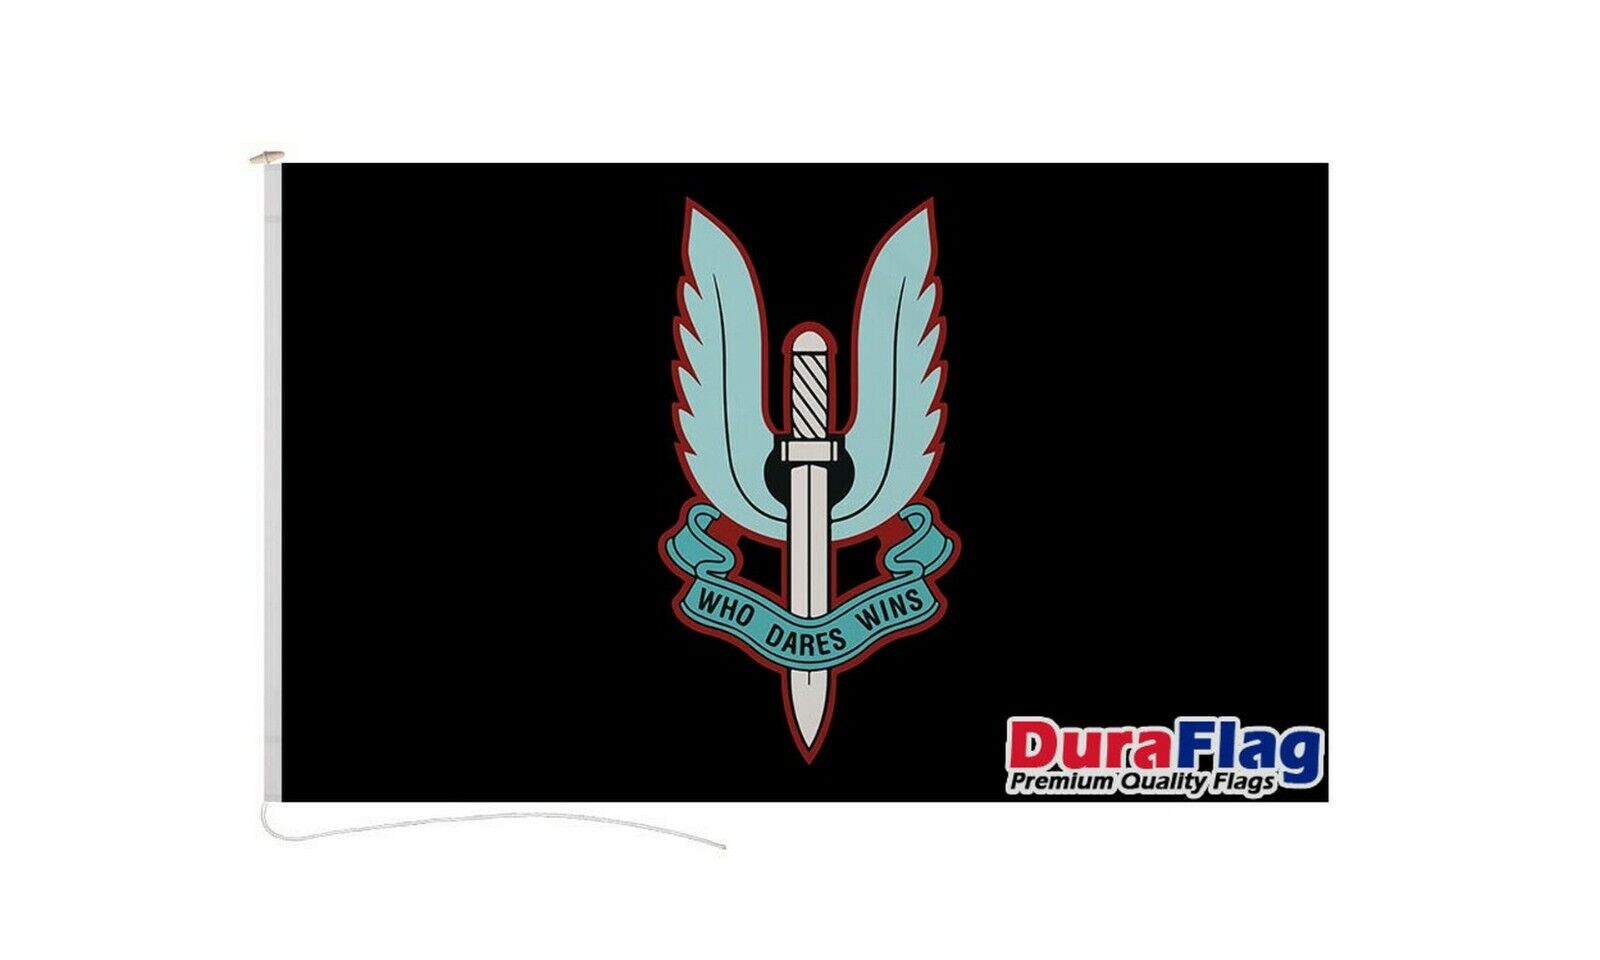 SPECIAL AIR SERVICE BLACK SAS DURAFLAG 150cm x 90cm QUALITY FLAG ROPE & TOGGLE